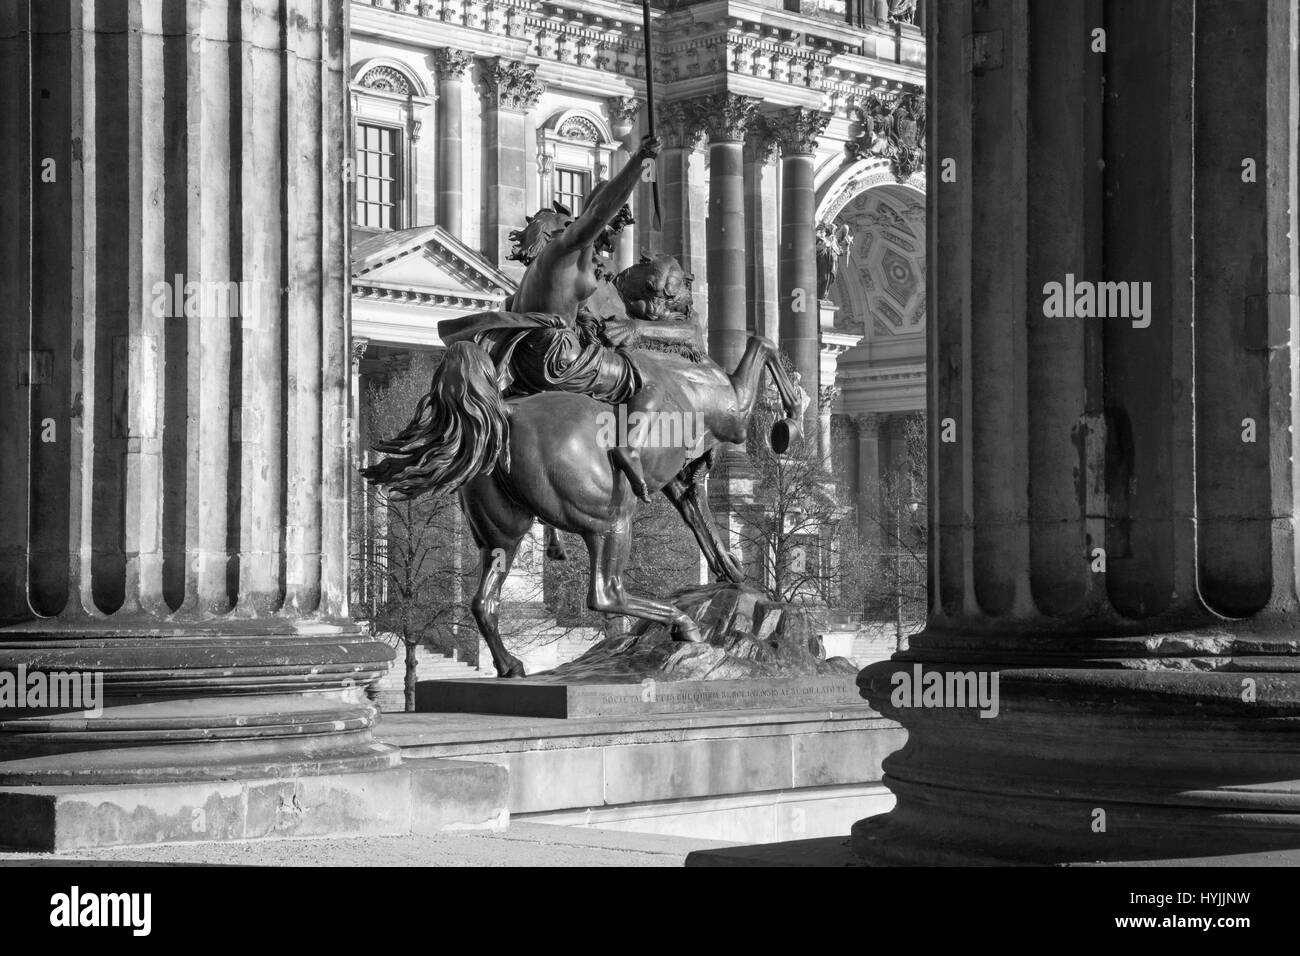 BERLIN, ALLEMAGNE - 13 février, 2017 : Le Dom et la sculpture de bronze Amazone zu Pferde en face de l'Altes Museum en août Kiss (1842). Banque D'Images